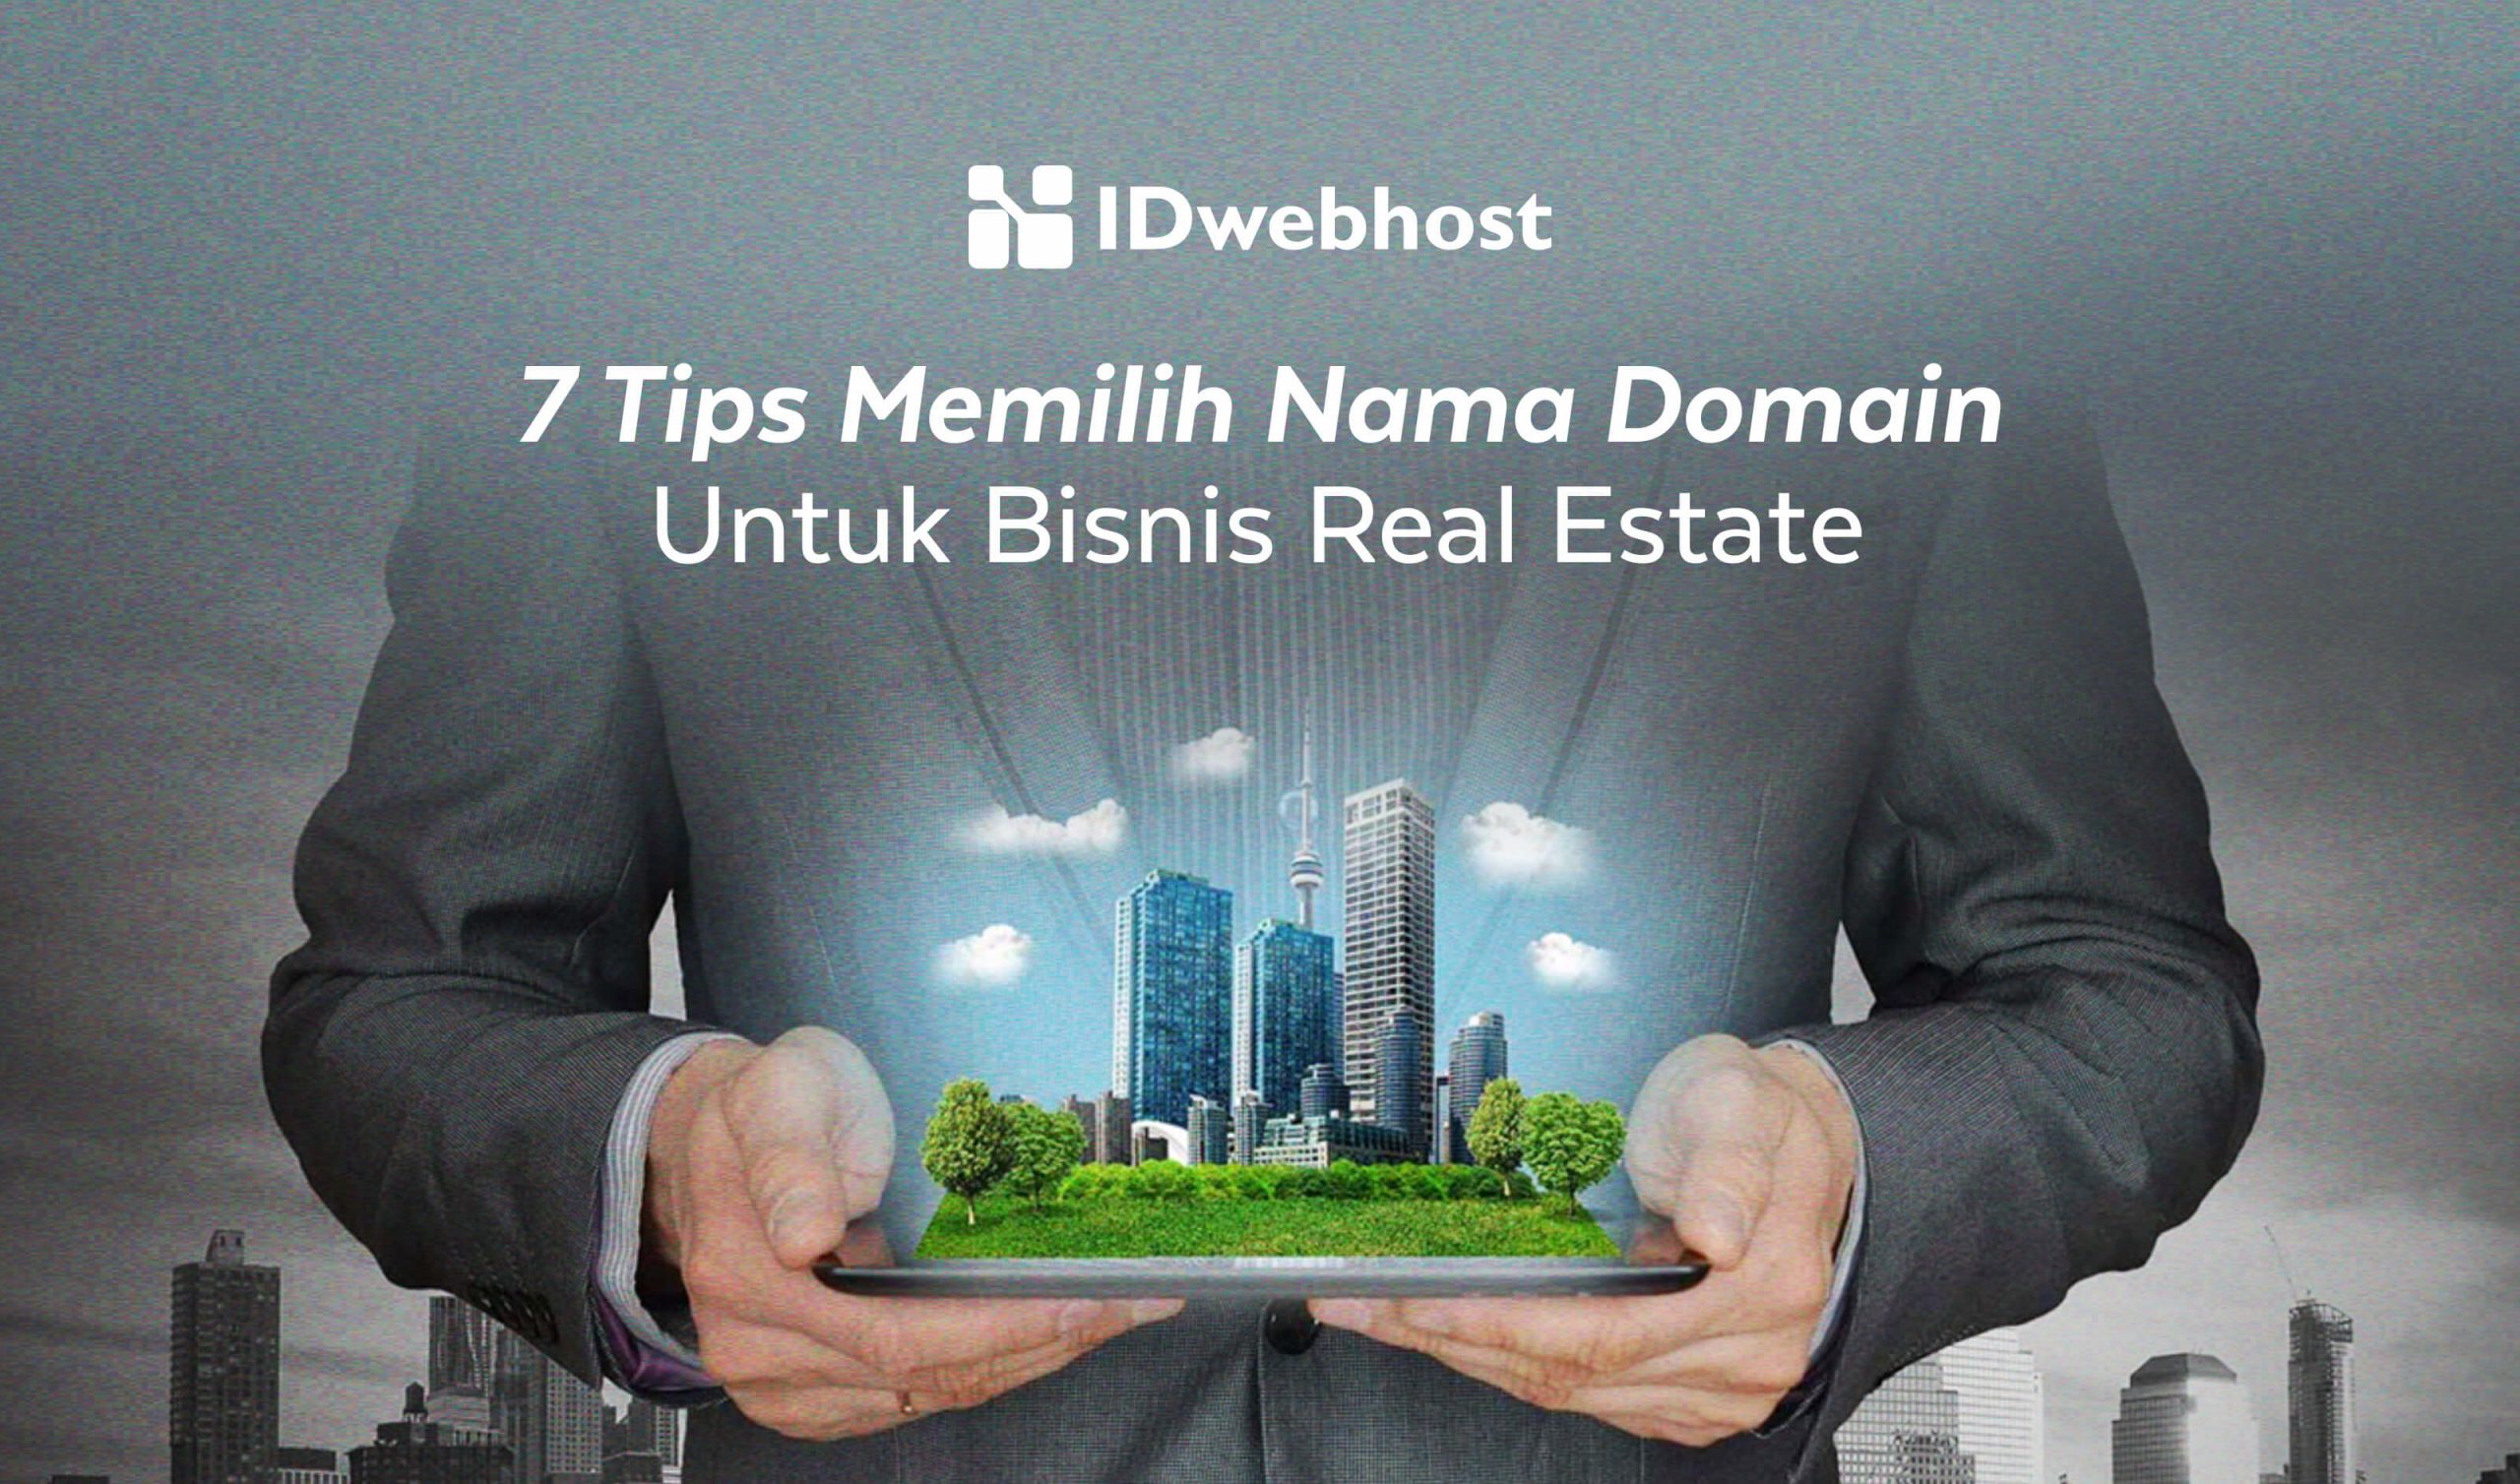 7 Tips Memilih Nama Domain Untuk Bisnis Real Estate